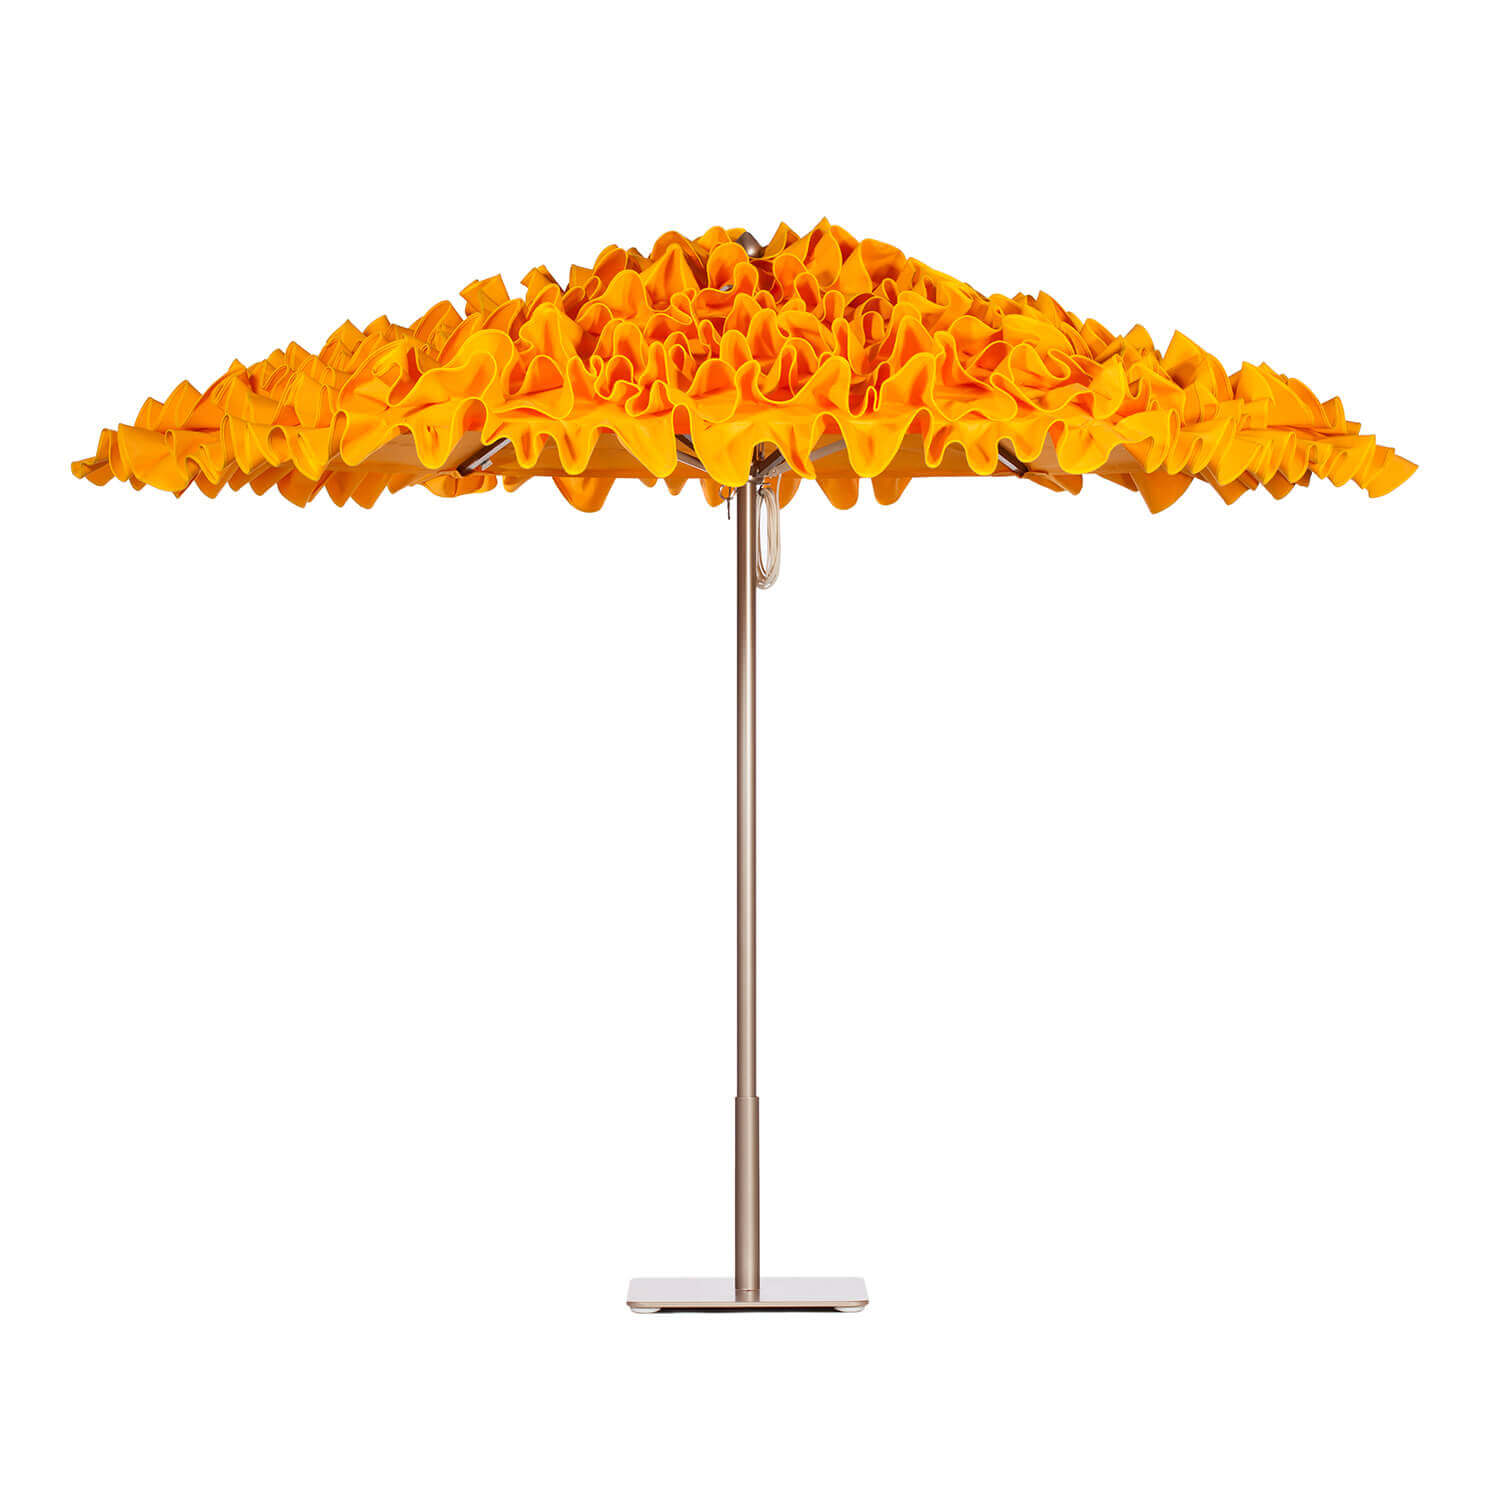 Orange Umbrella Image